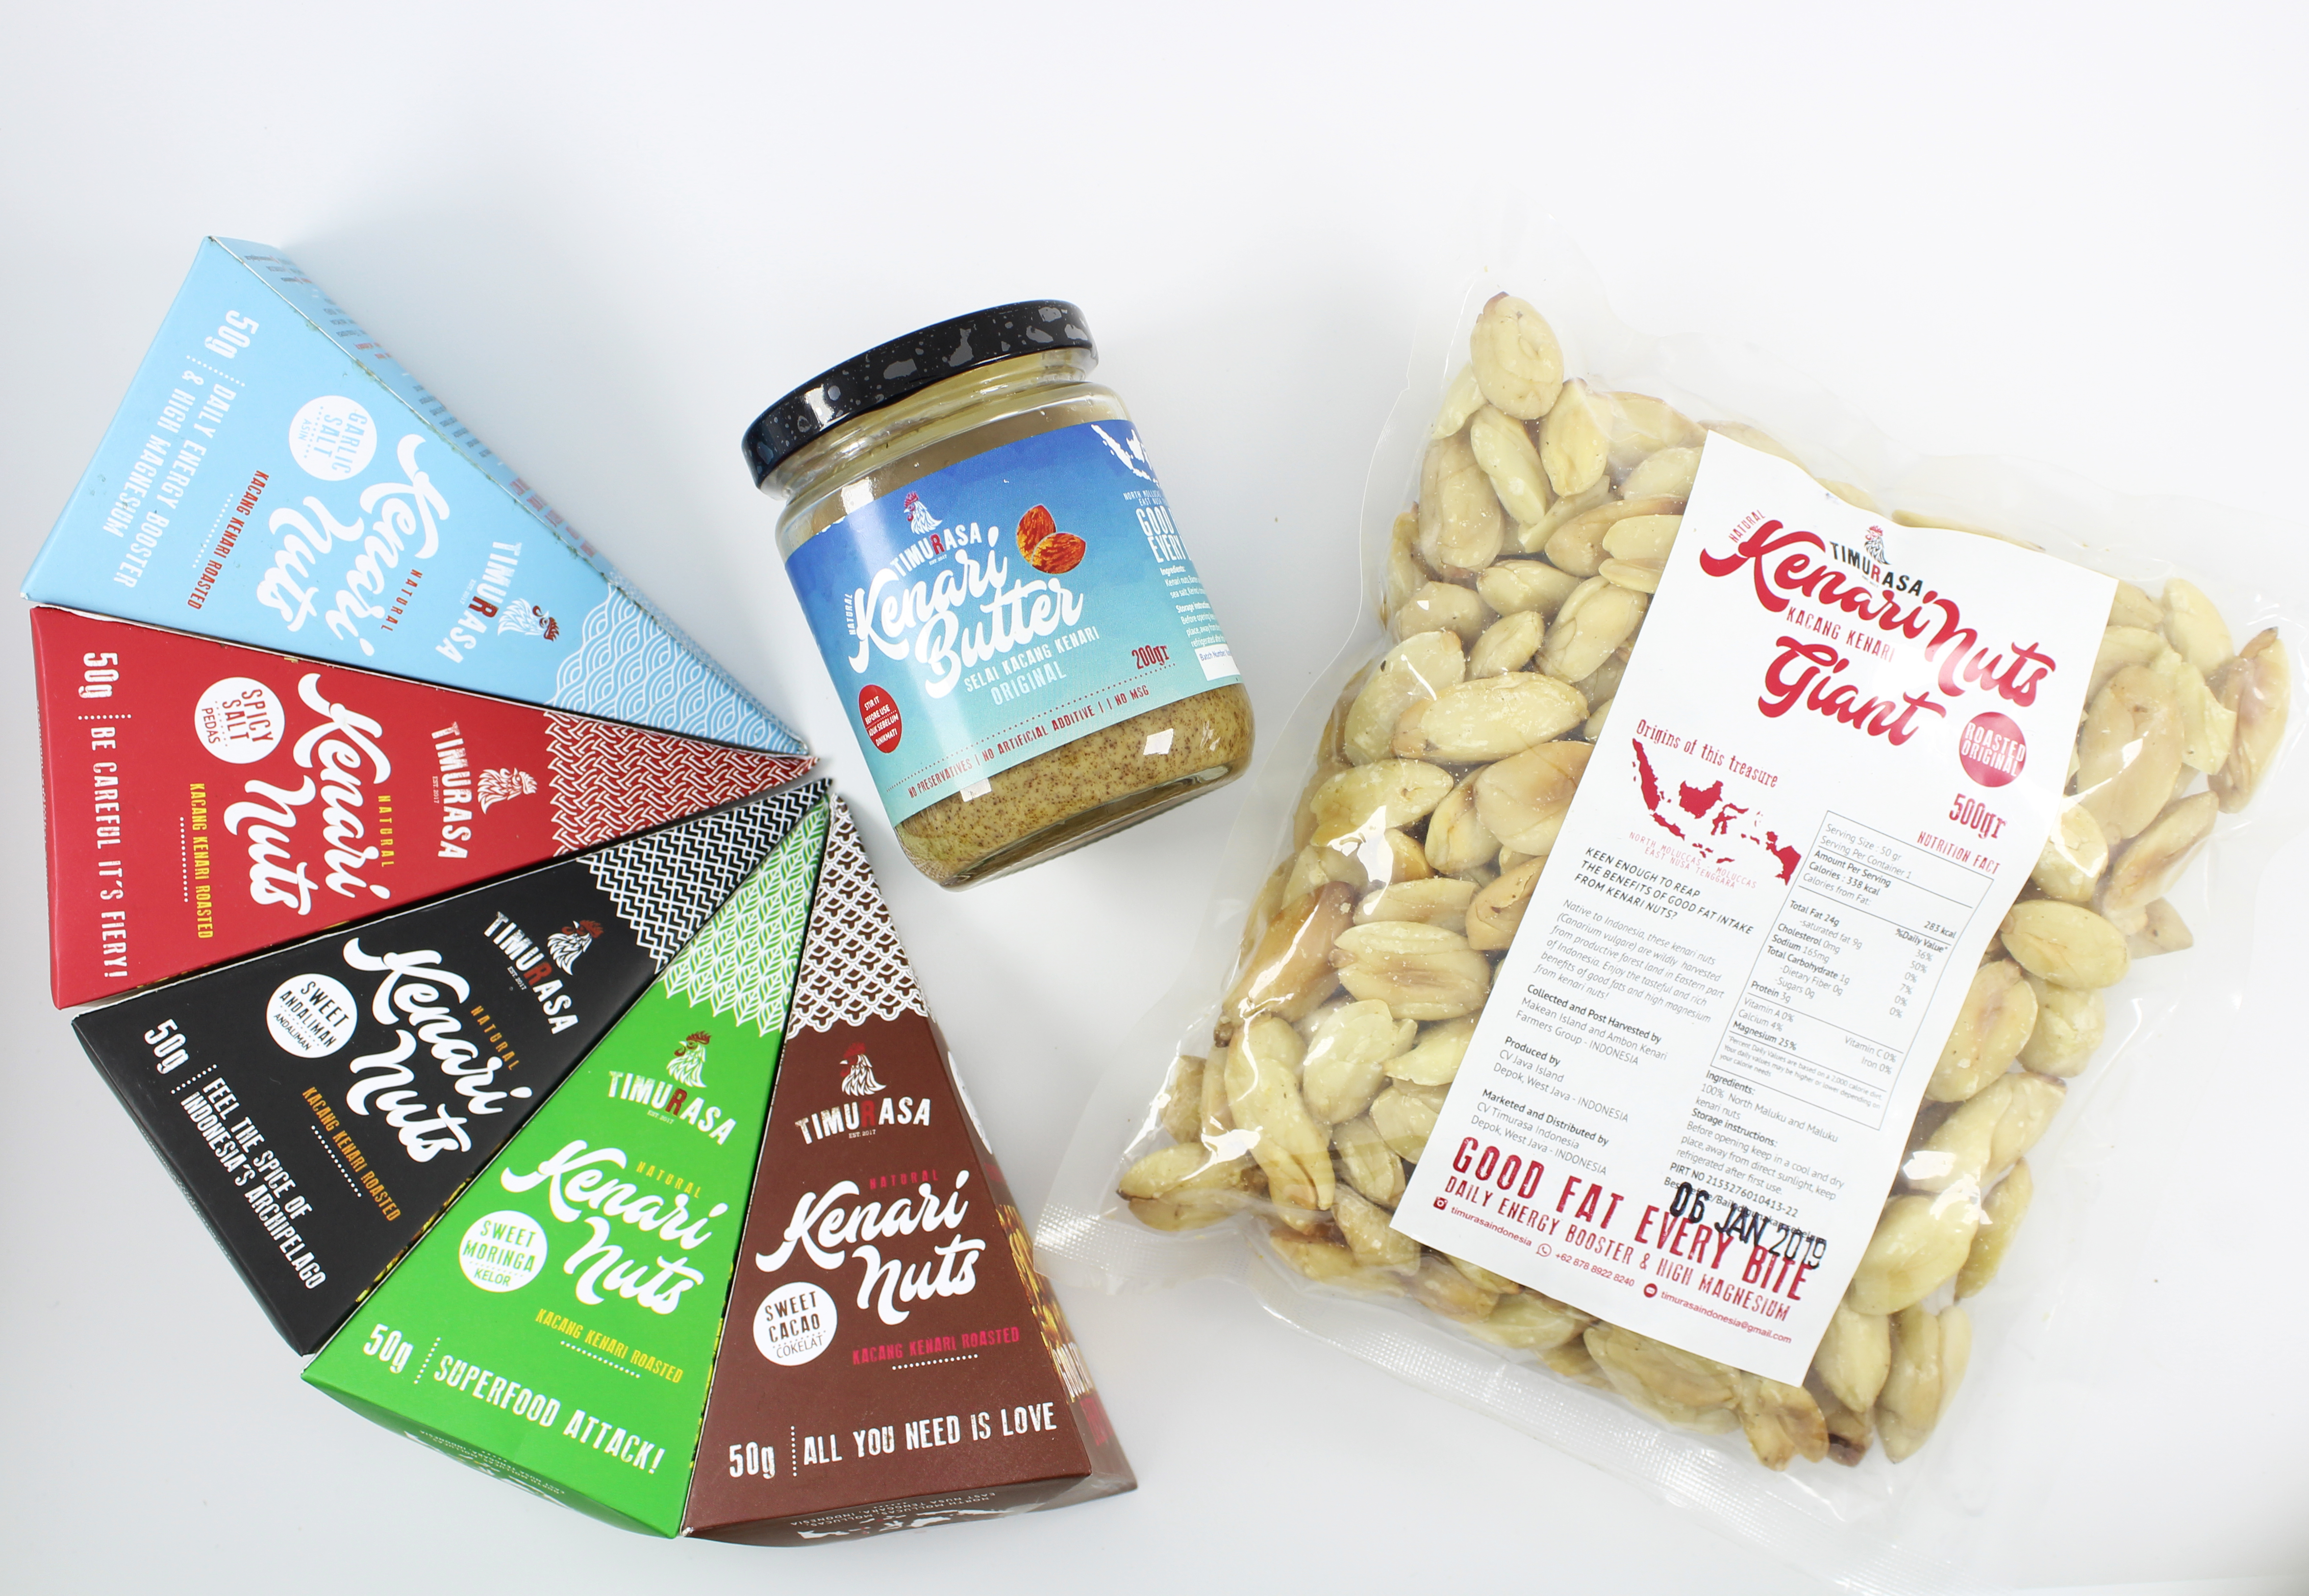 Kenari Nut Based Products